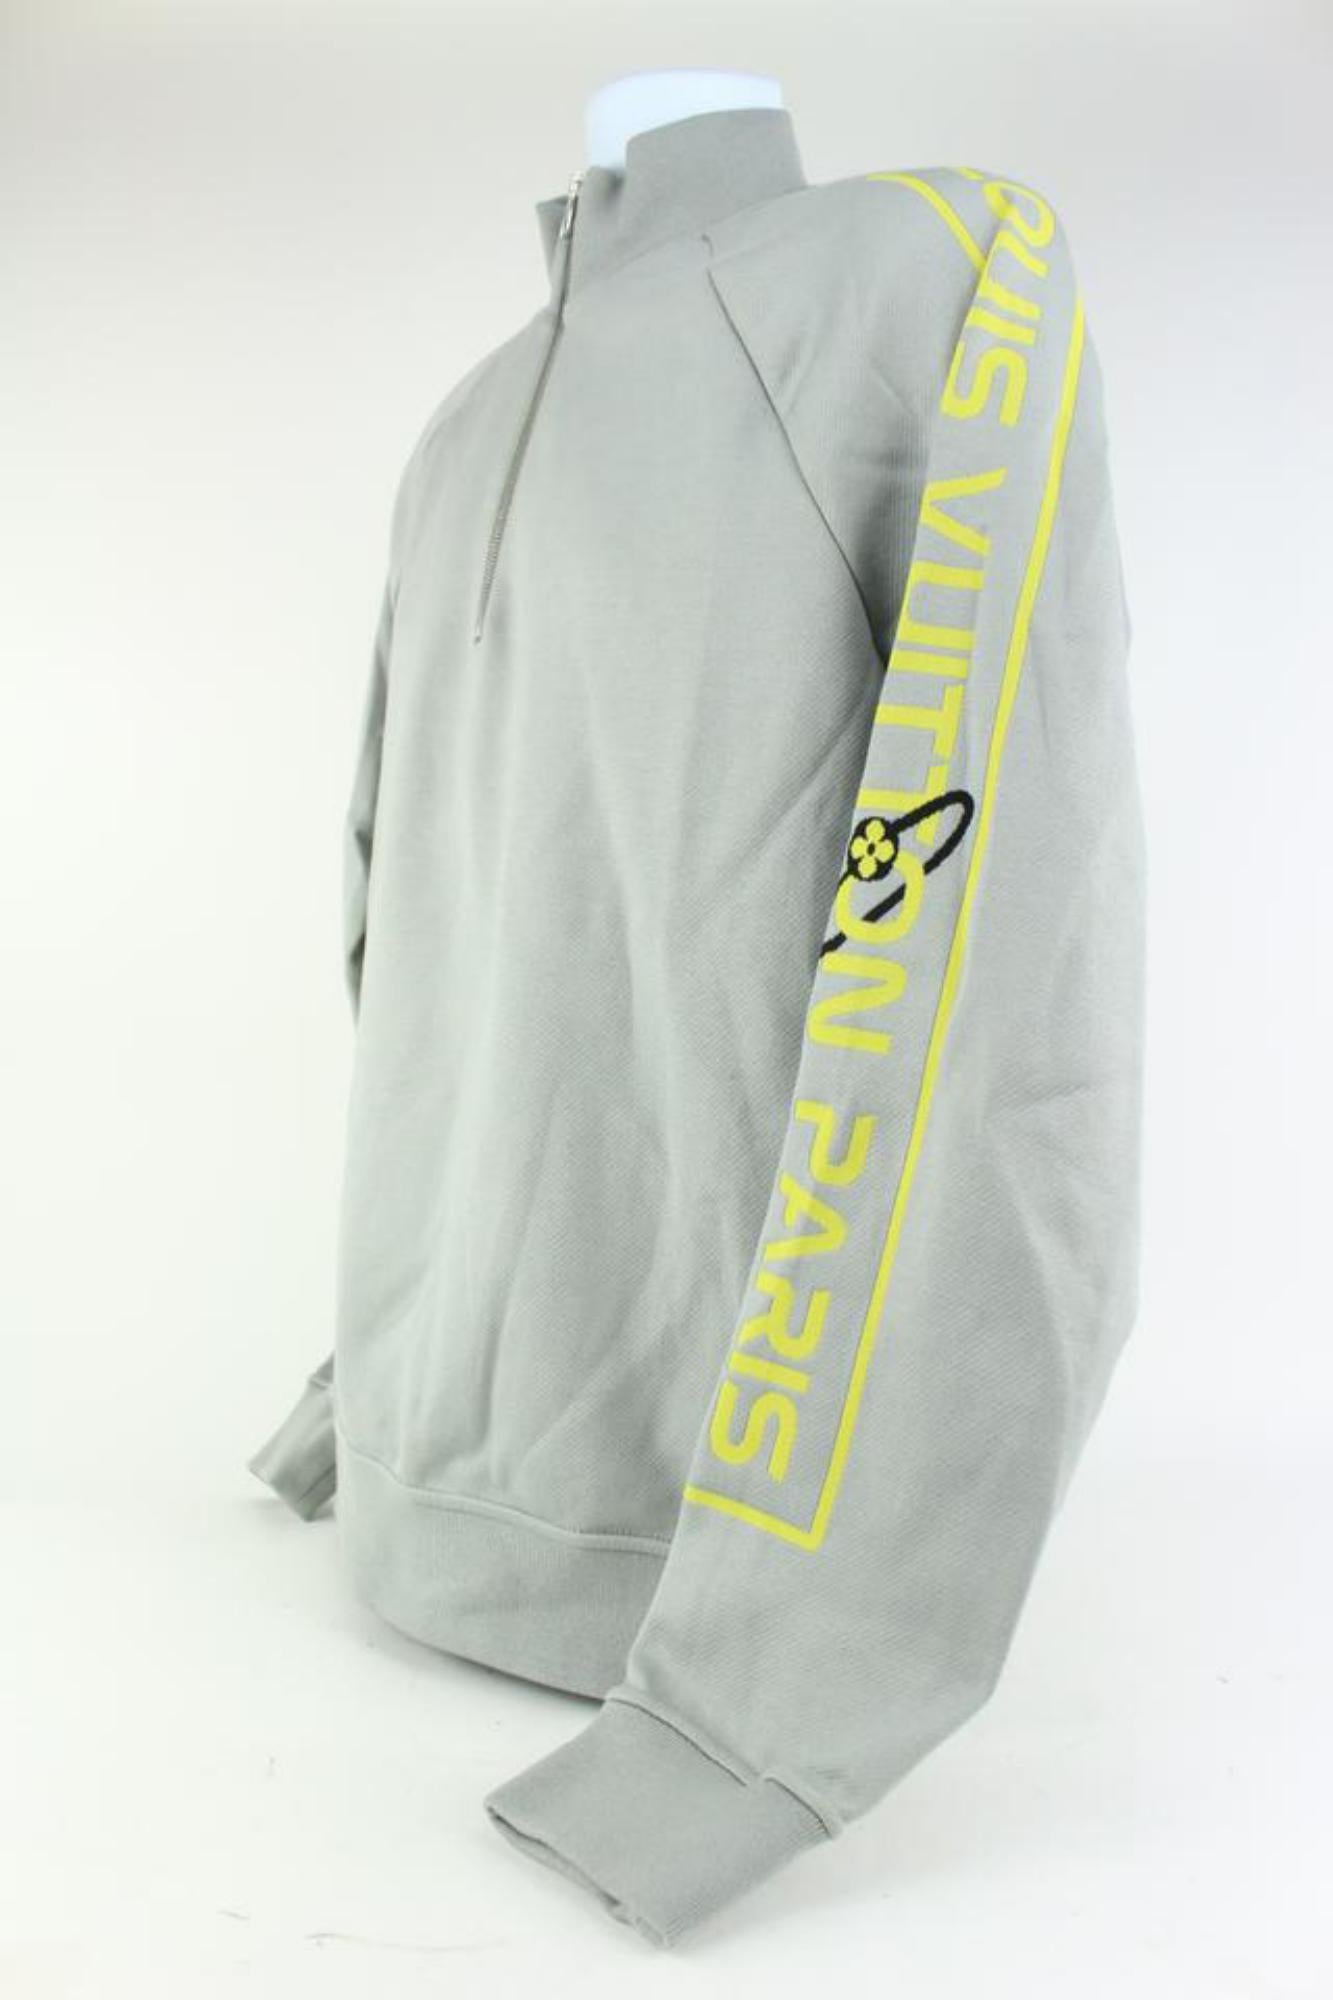 Louis Vuitton Men's XL Grey x Yellow Gravity Raglan Zip Sweater 928lv70 For Sale 2